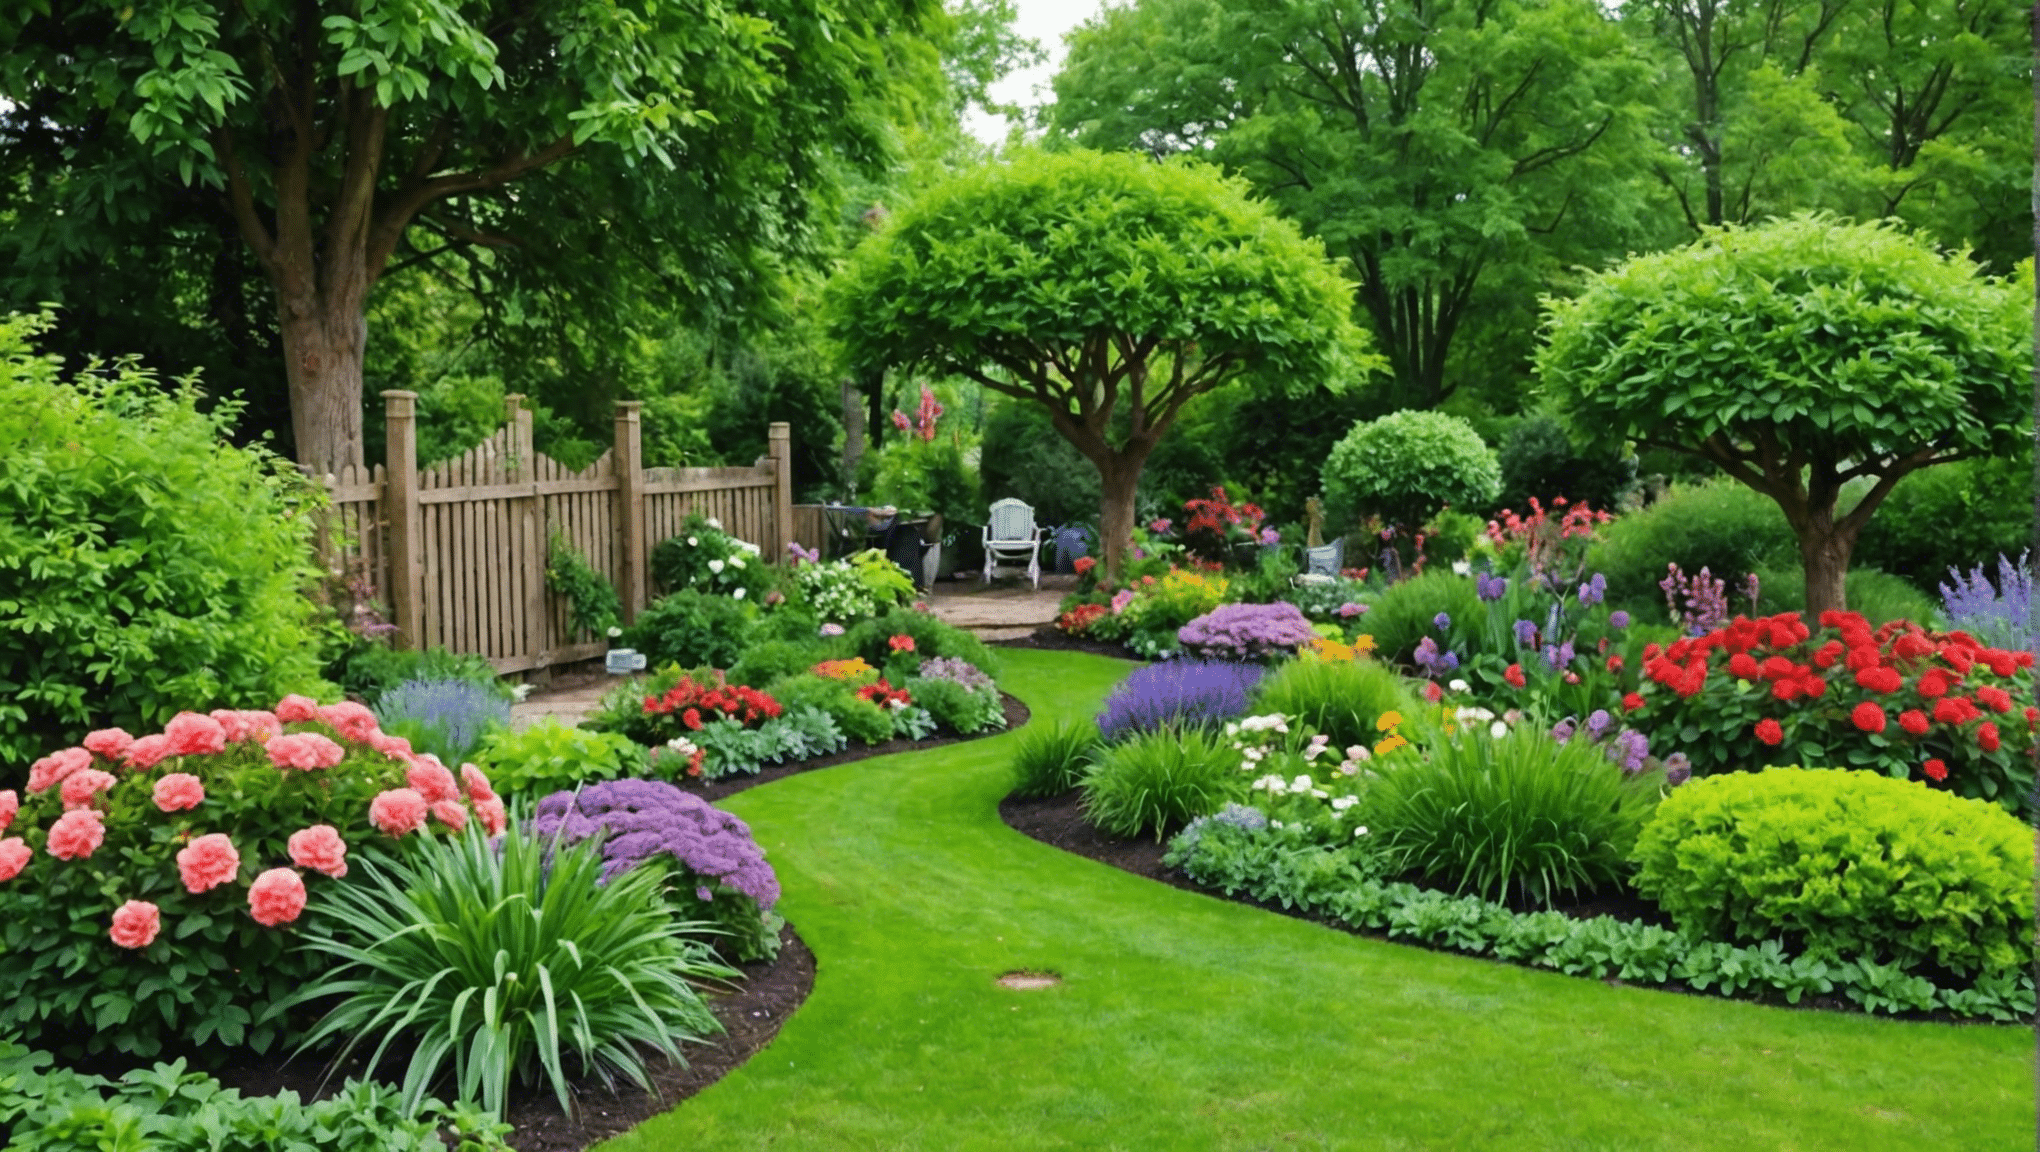 zistite, či tieto nekonvenčné záhradnícke nápady stoja za vyskúšanie, a pripravte sa posunúť svoju záhradu na vyššiu úroveň pomocou inovatívnych konceptov.